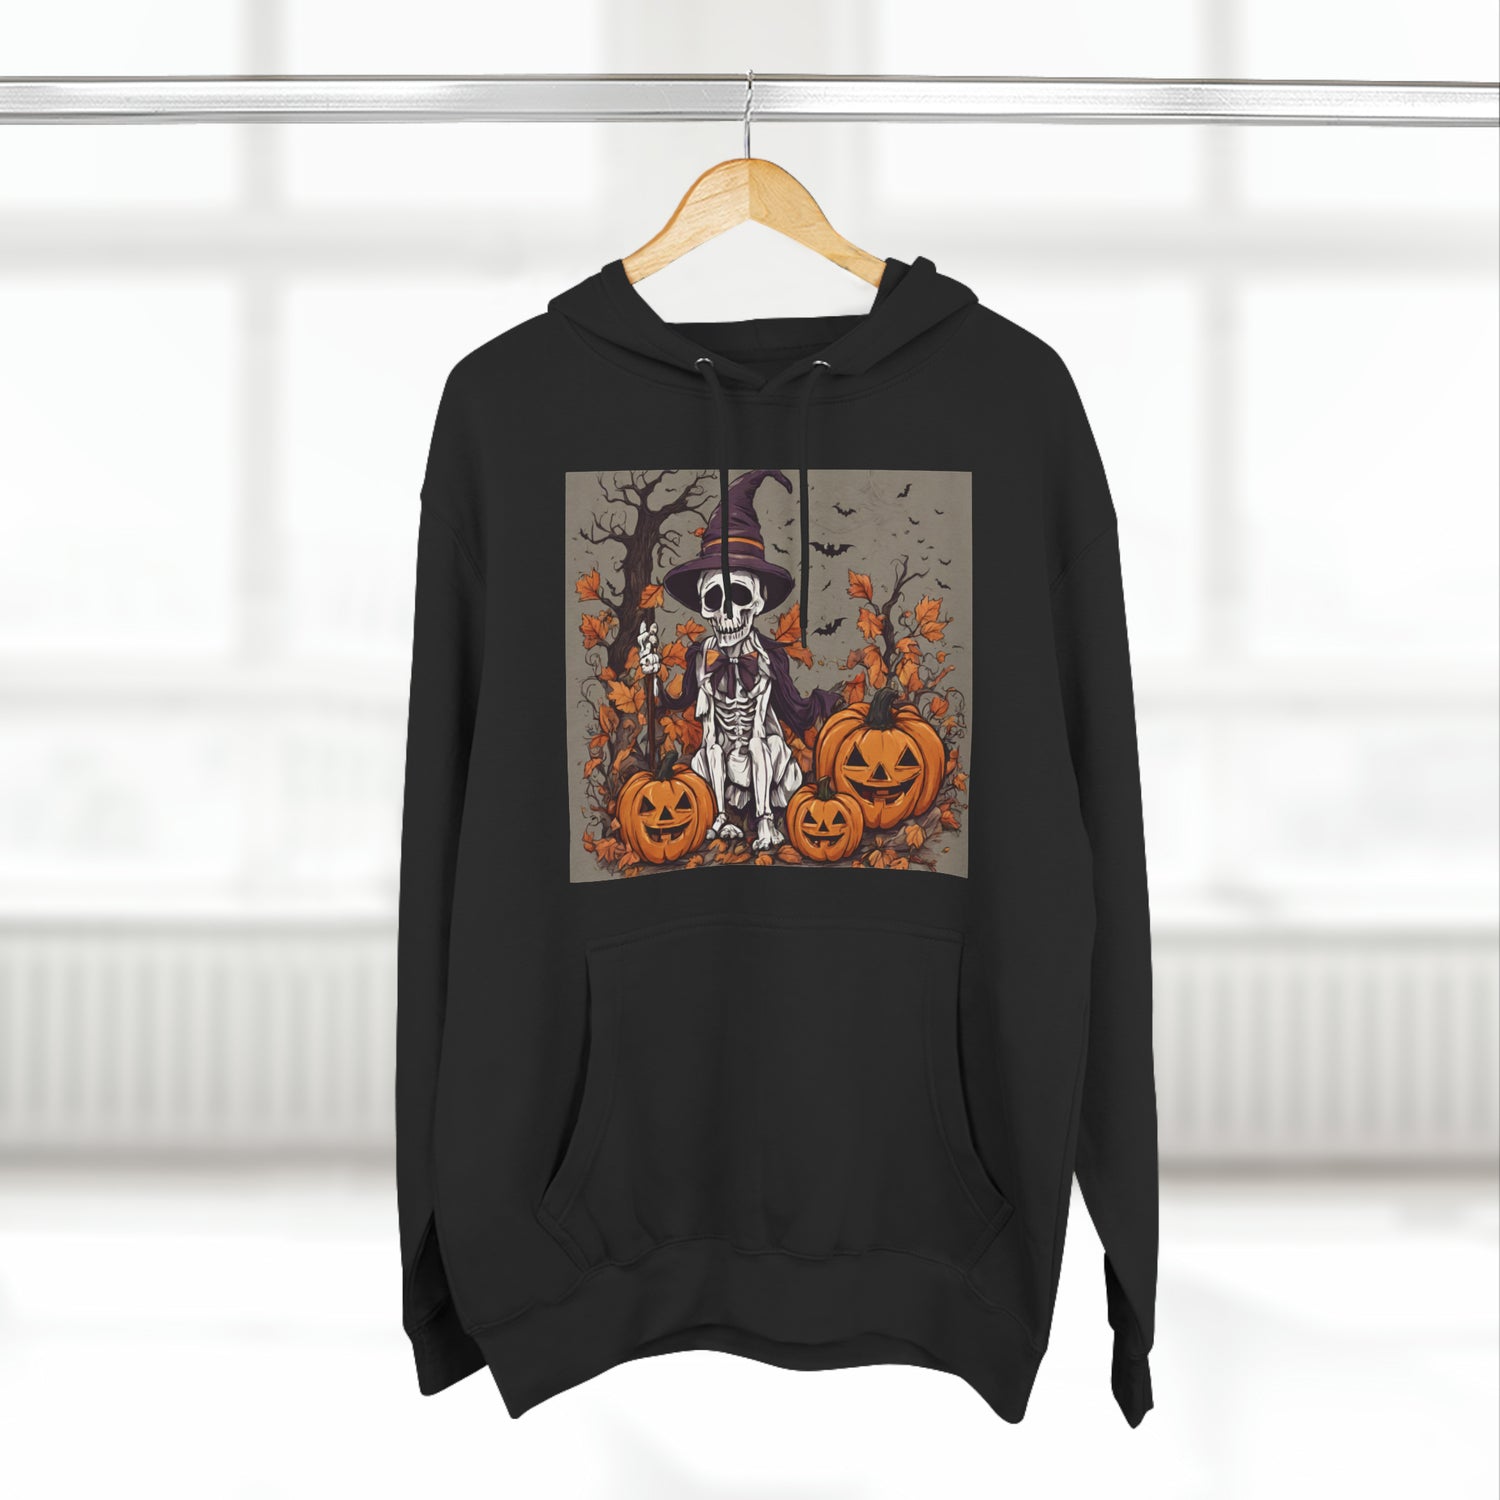 Hoodie Hoodie Halloween Sweatshirt for Spooky Hoodies Outfits this Fall Petrova Designs